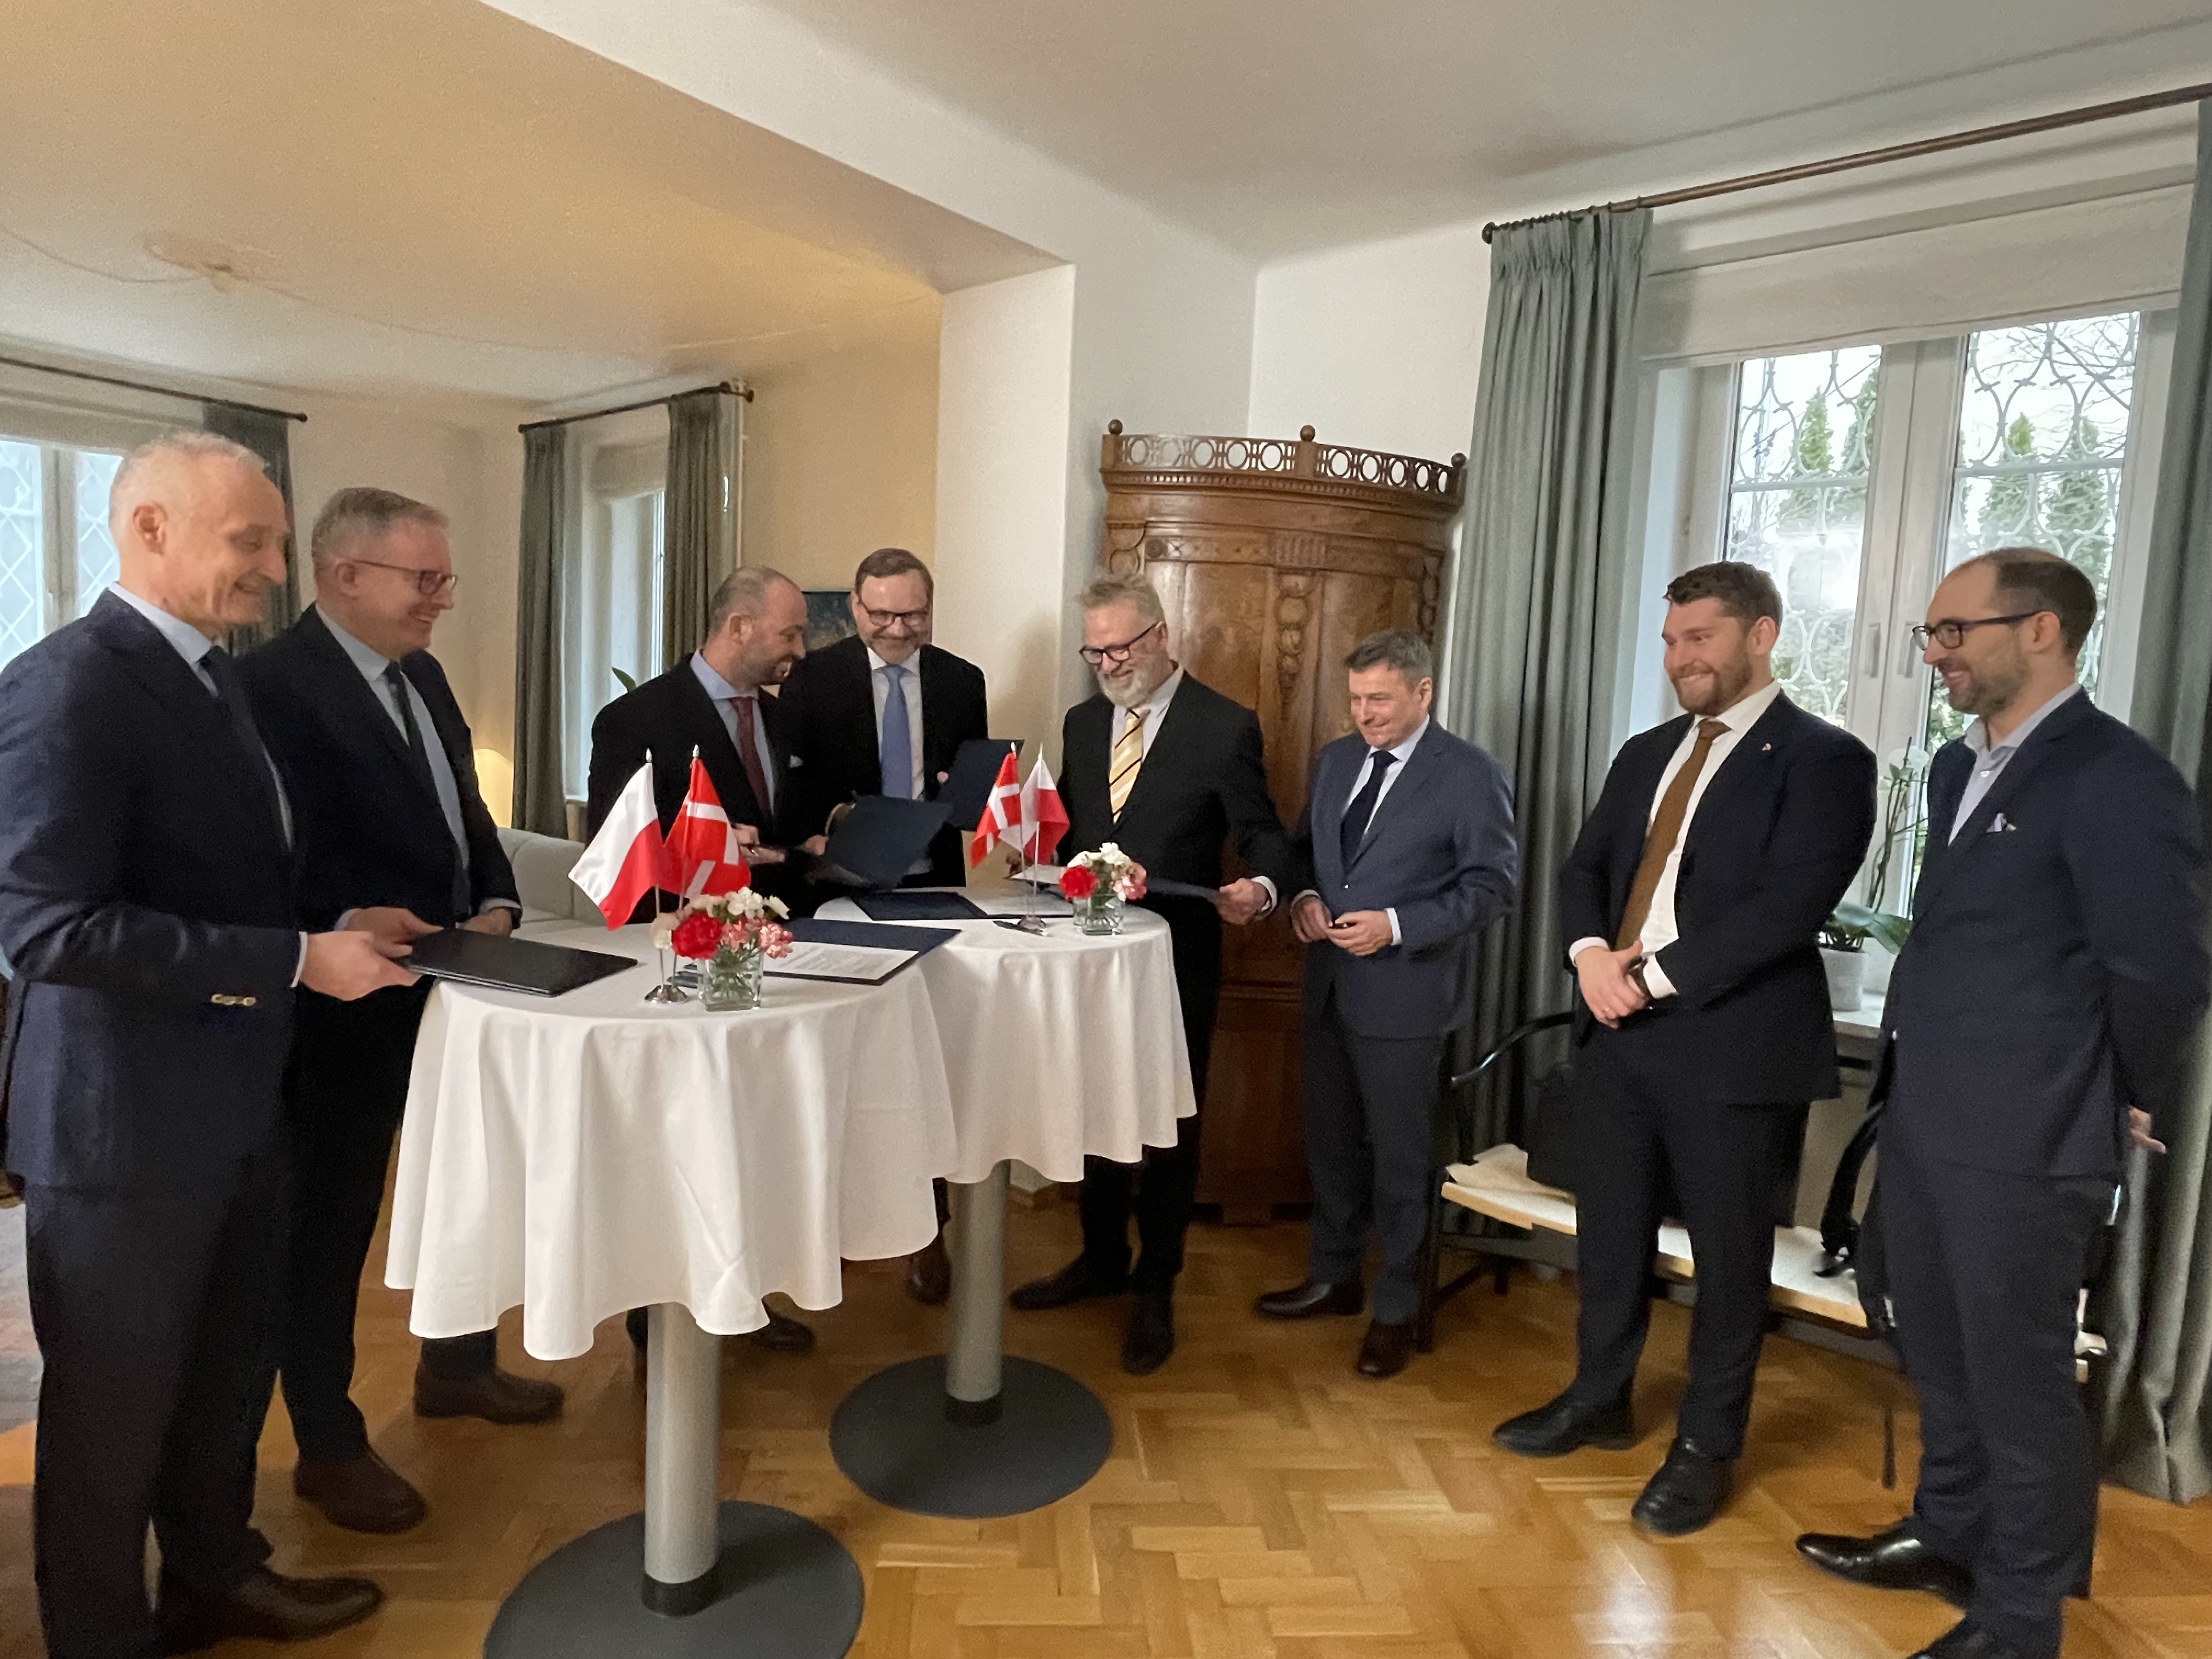 Reprezentanci stron porozumienia stoją przy stołach. Na stołach stoją flagi Polski i Danii oraz  leżą dokumenty. Mężczyźni uśmiechają się do siebie.